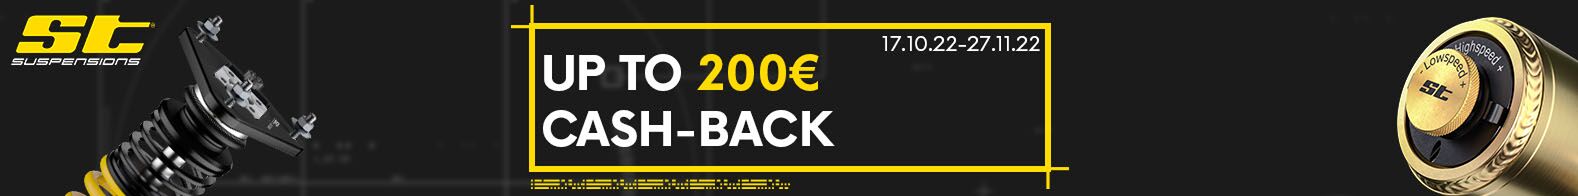 ST Suspensions CASH-BACK - až 200€ (vč. 19% DPH) při nákupu podvozku či pružin zpět na účet !!!